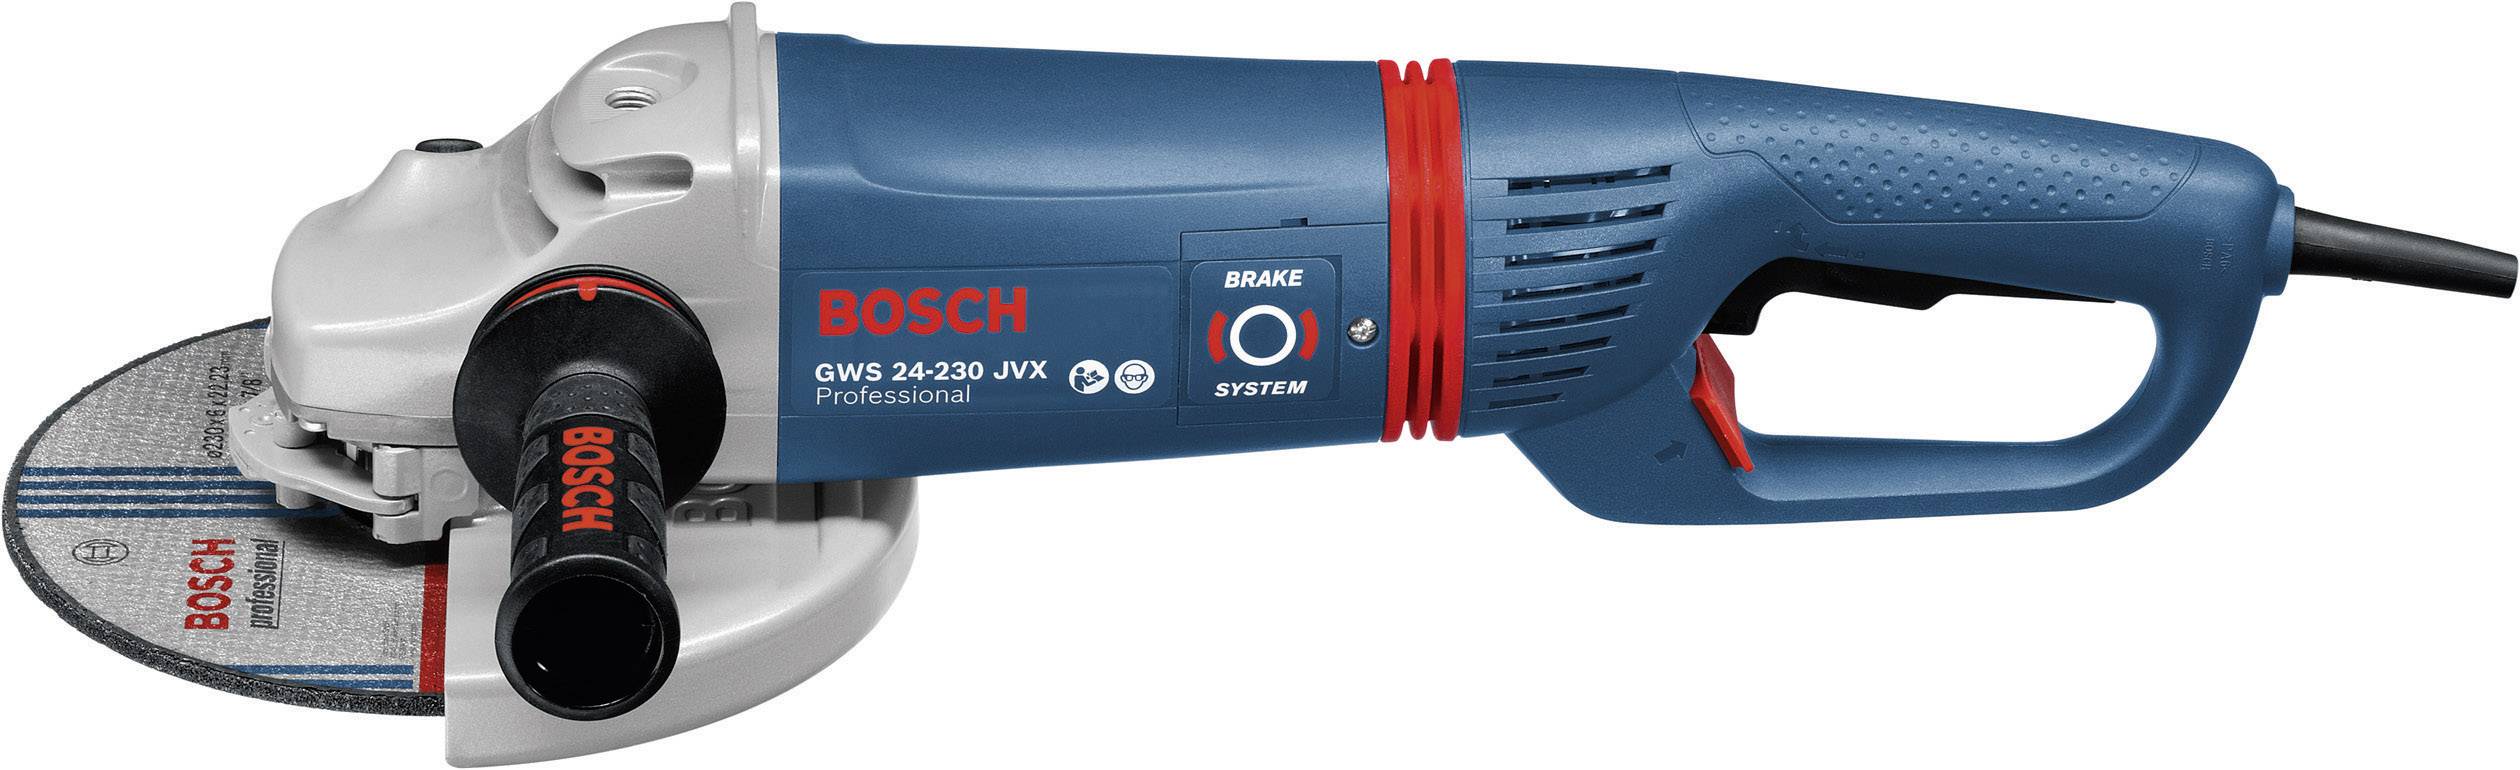 Купить bosch 230. Болгарка бош 230. УШМ 24-230 бош. Bosch 2400w professional GWS 24. Bosch GWS 24-230 JBV, 2400 Вт, 230 мм.